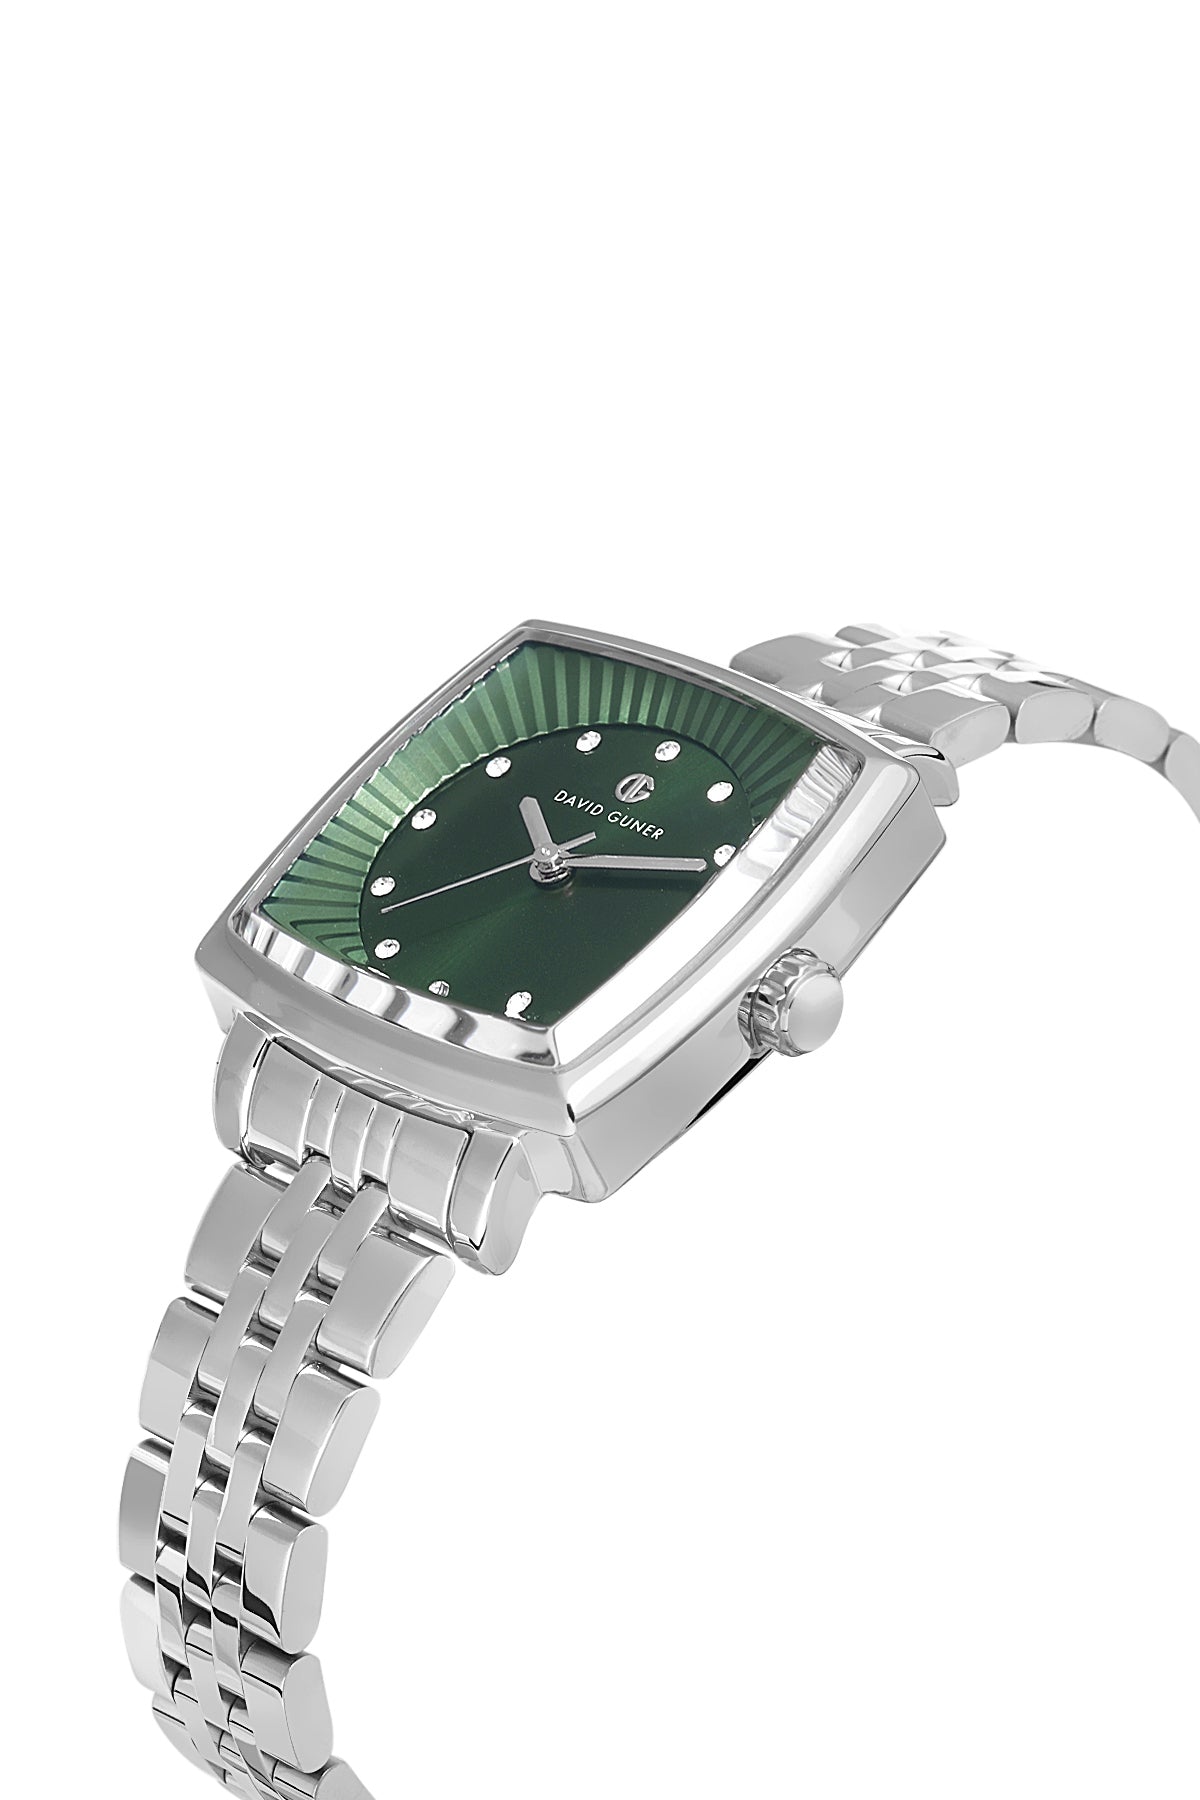 Davıd Guner Silver Plated Green Dial Plain Women's Wristwatch